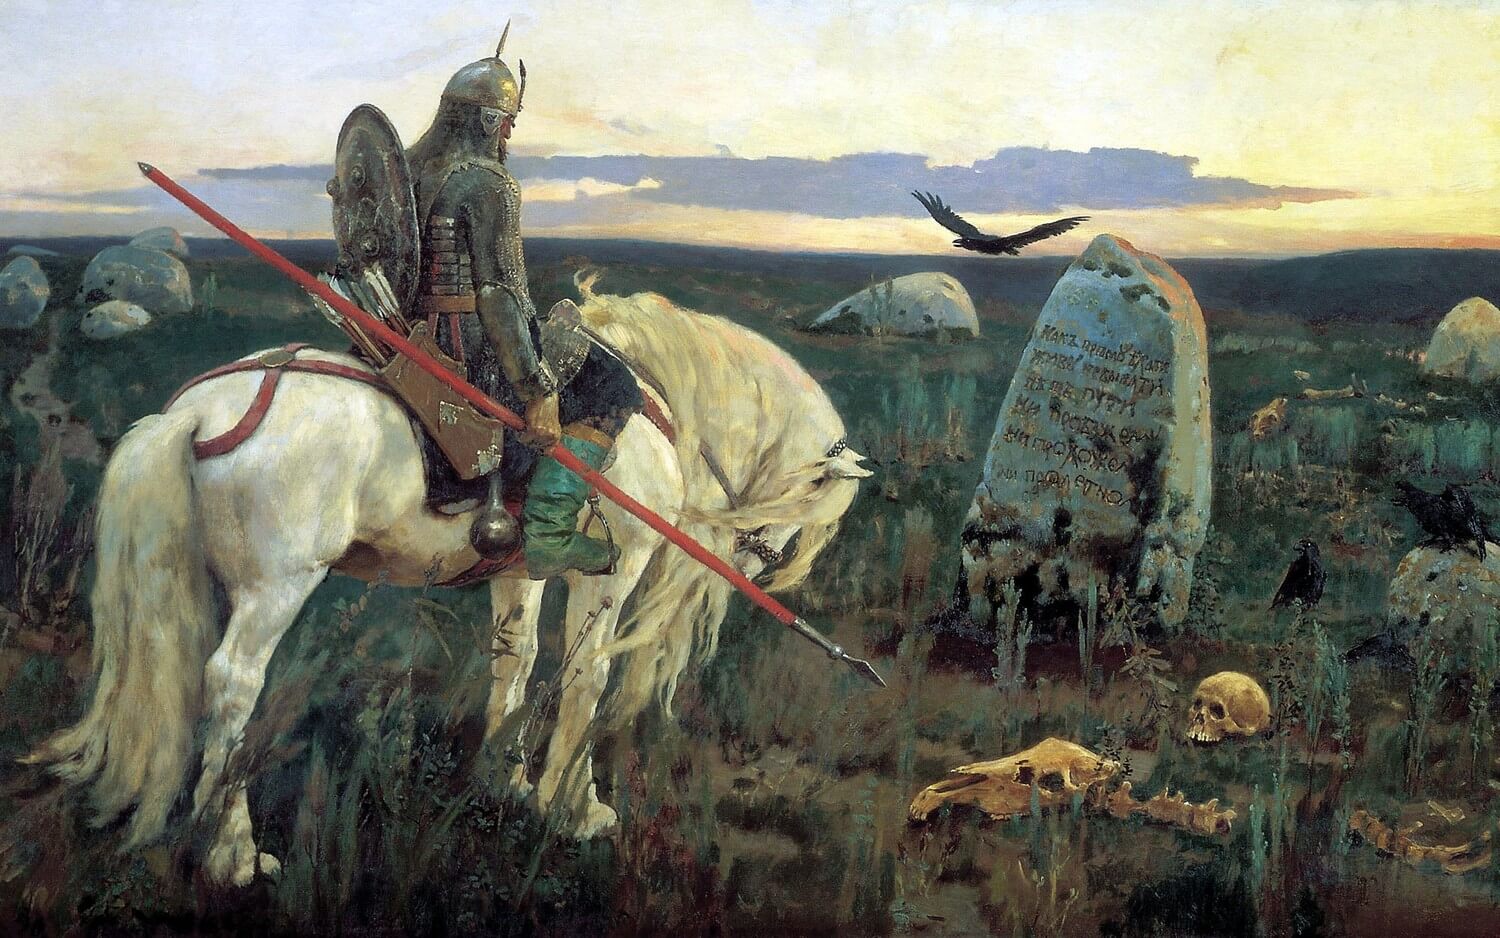 Victor Vasnetsov, Knight at the Crossroads Painting Description